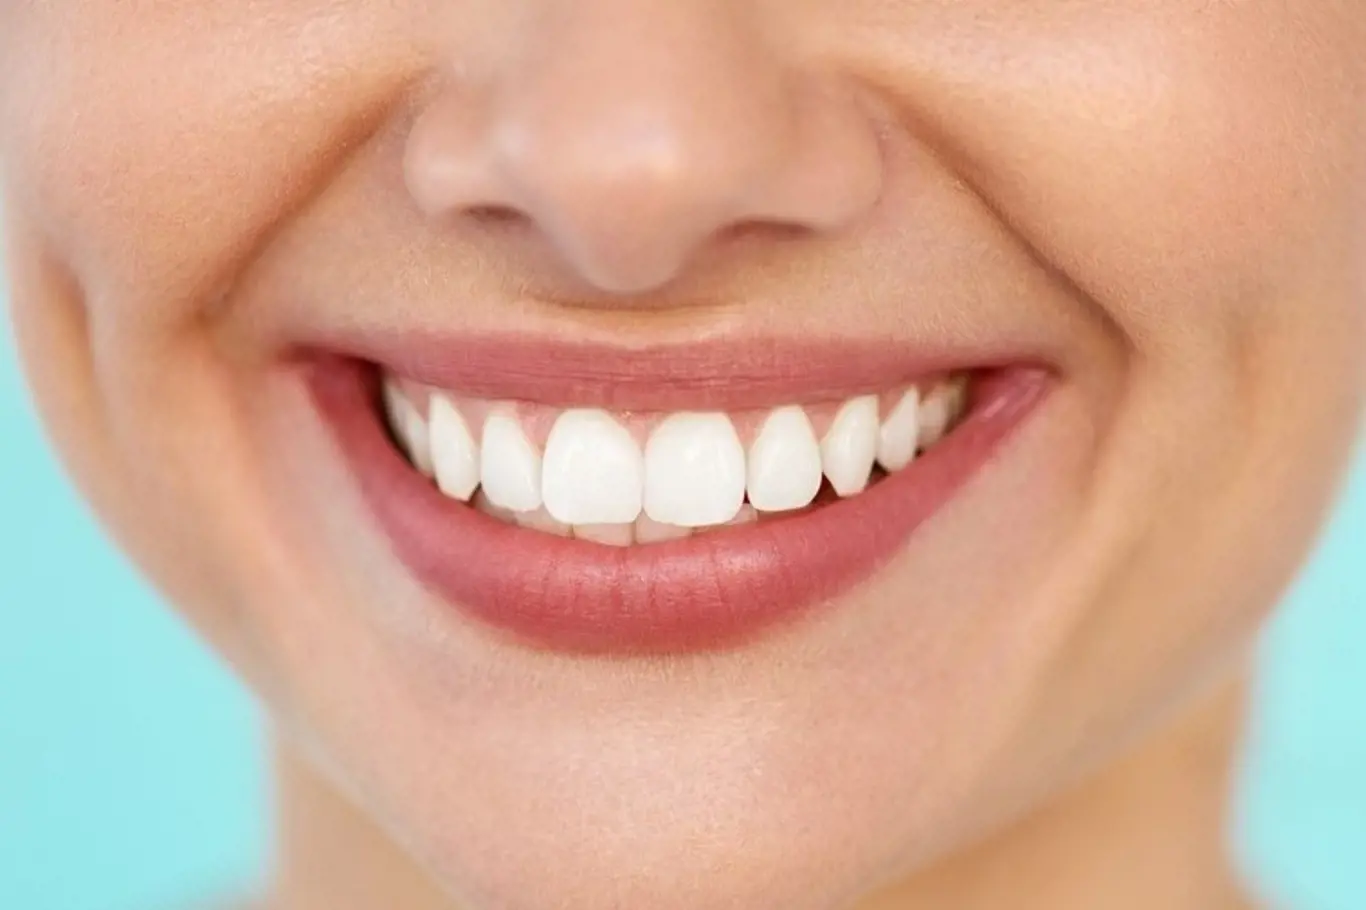 Čištění zubů olejem je starodávná praxe, jež je spojována se systémem tradiční indické medicíny